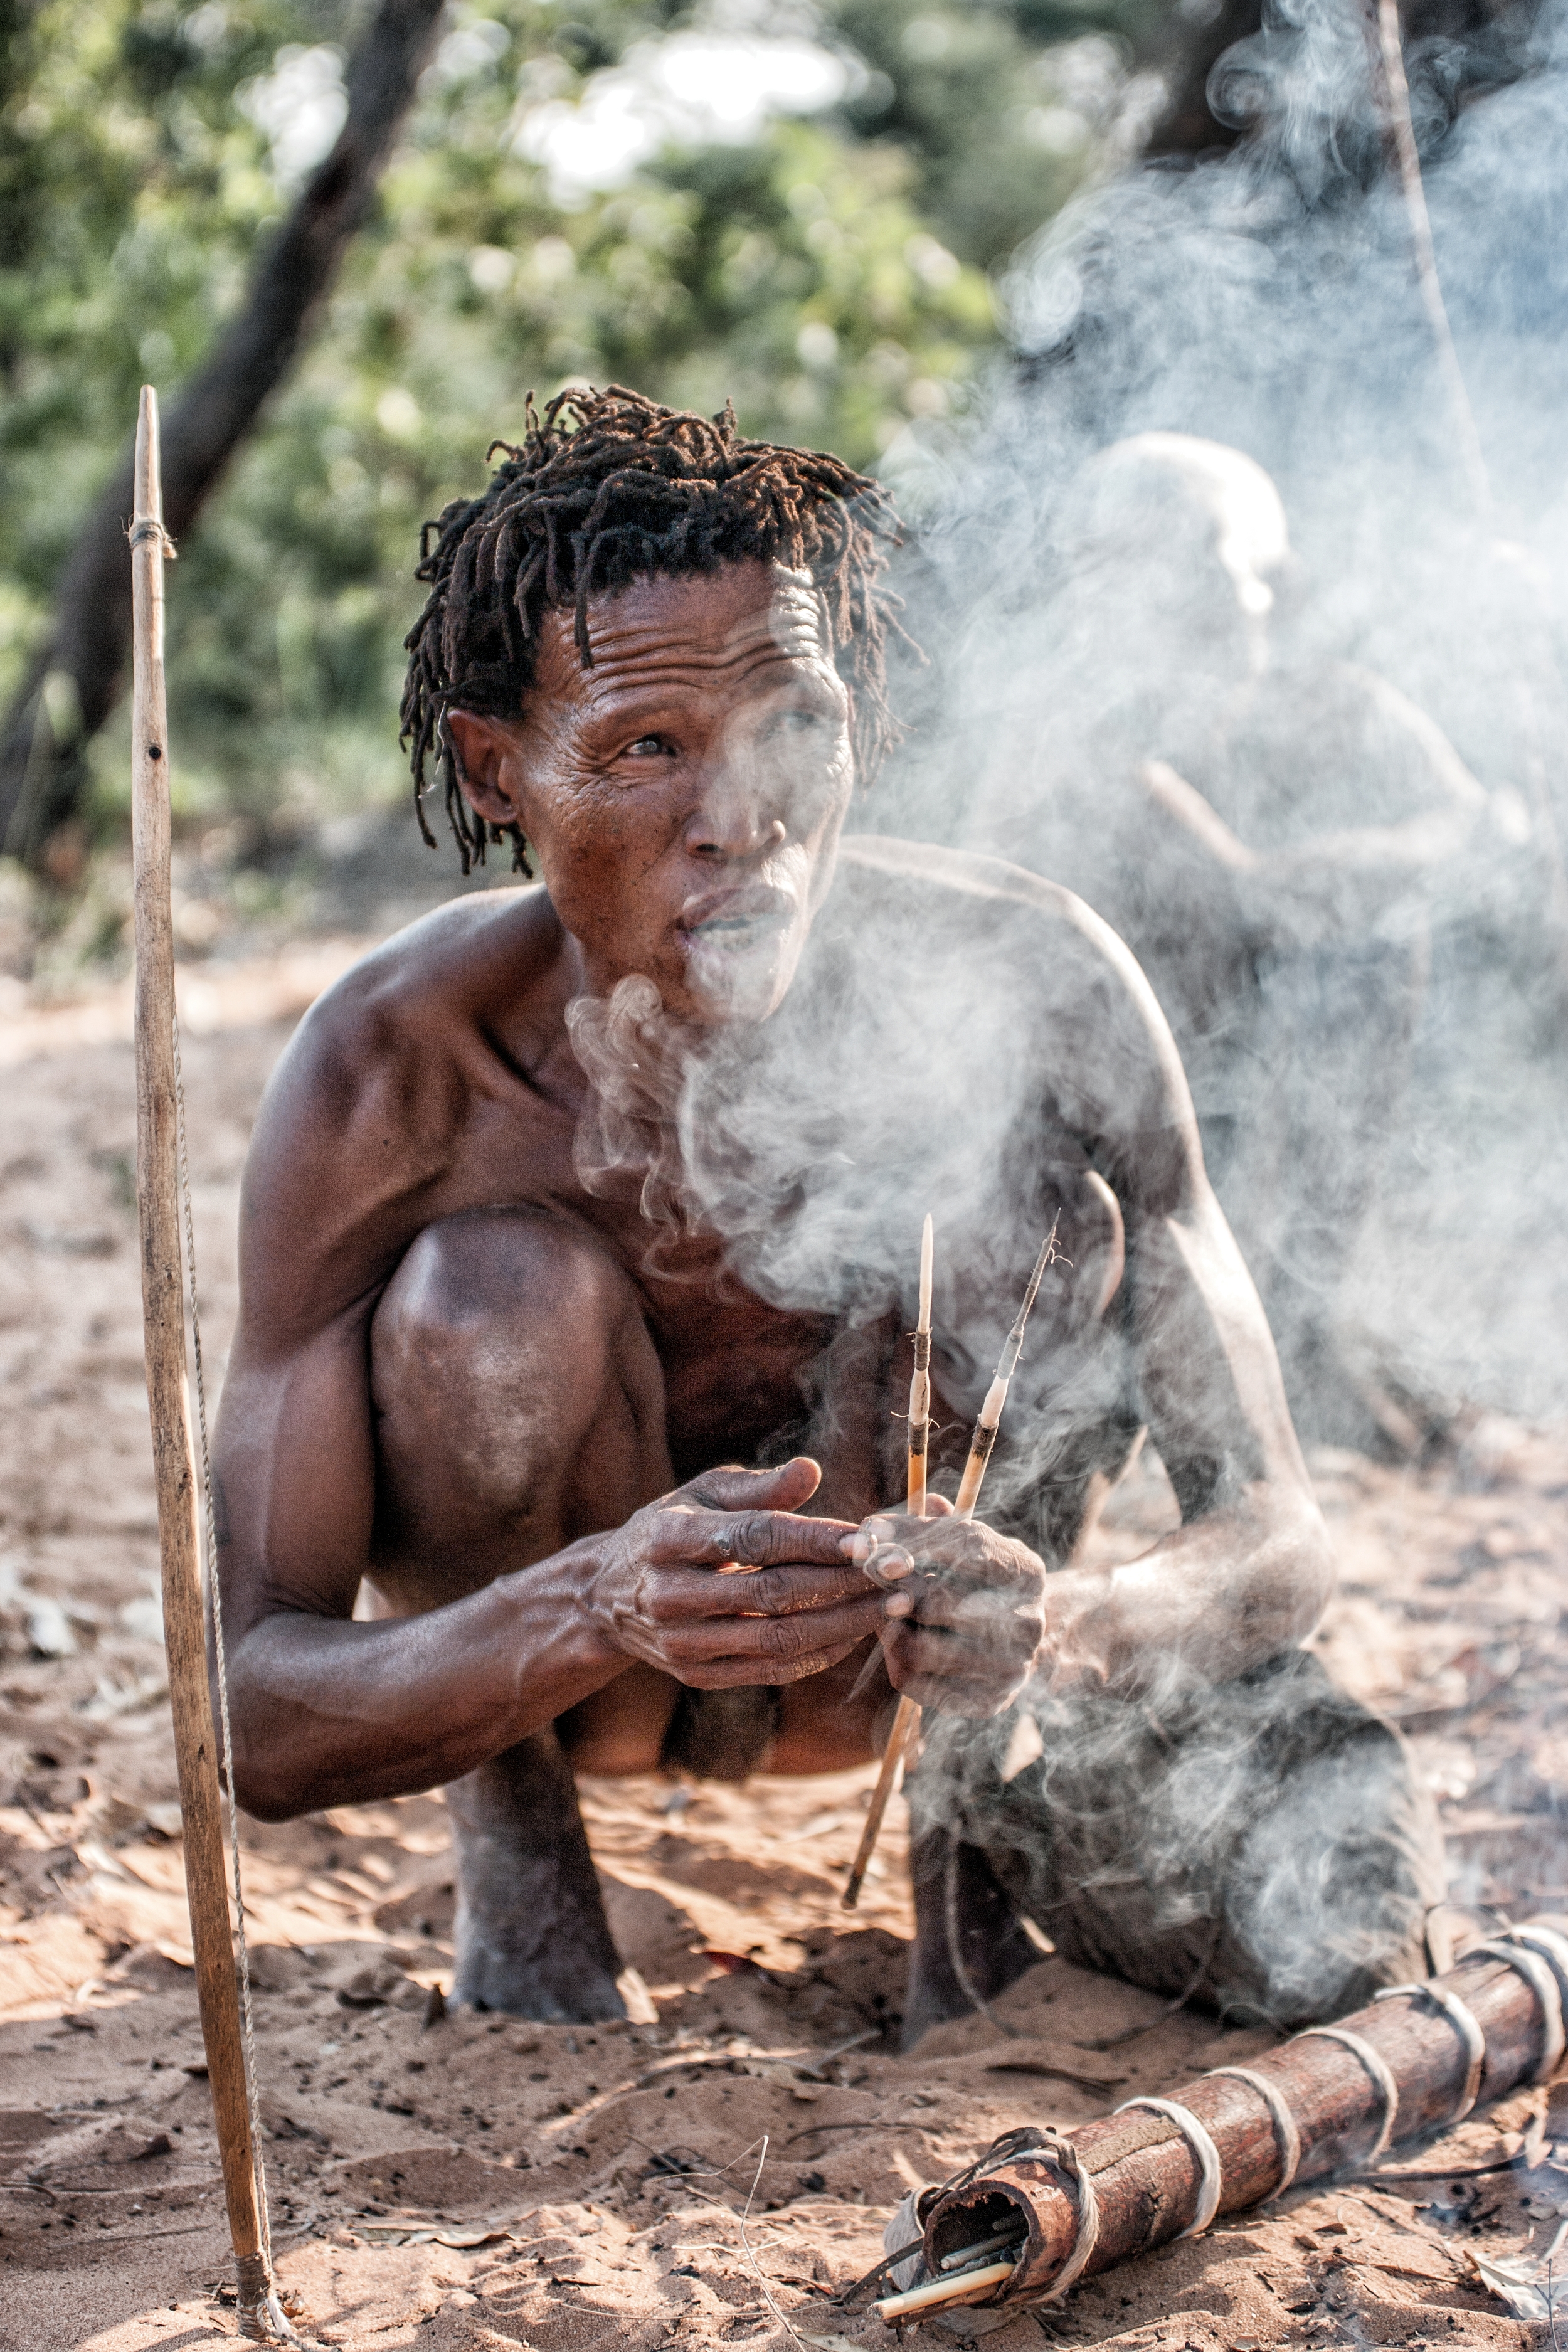 bushmen: hunters and gatherers